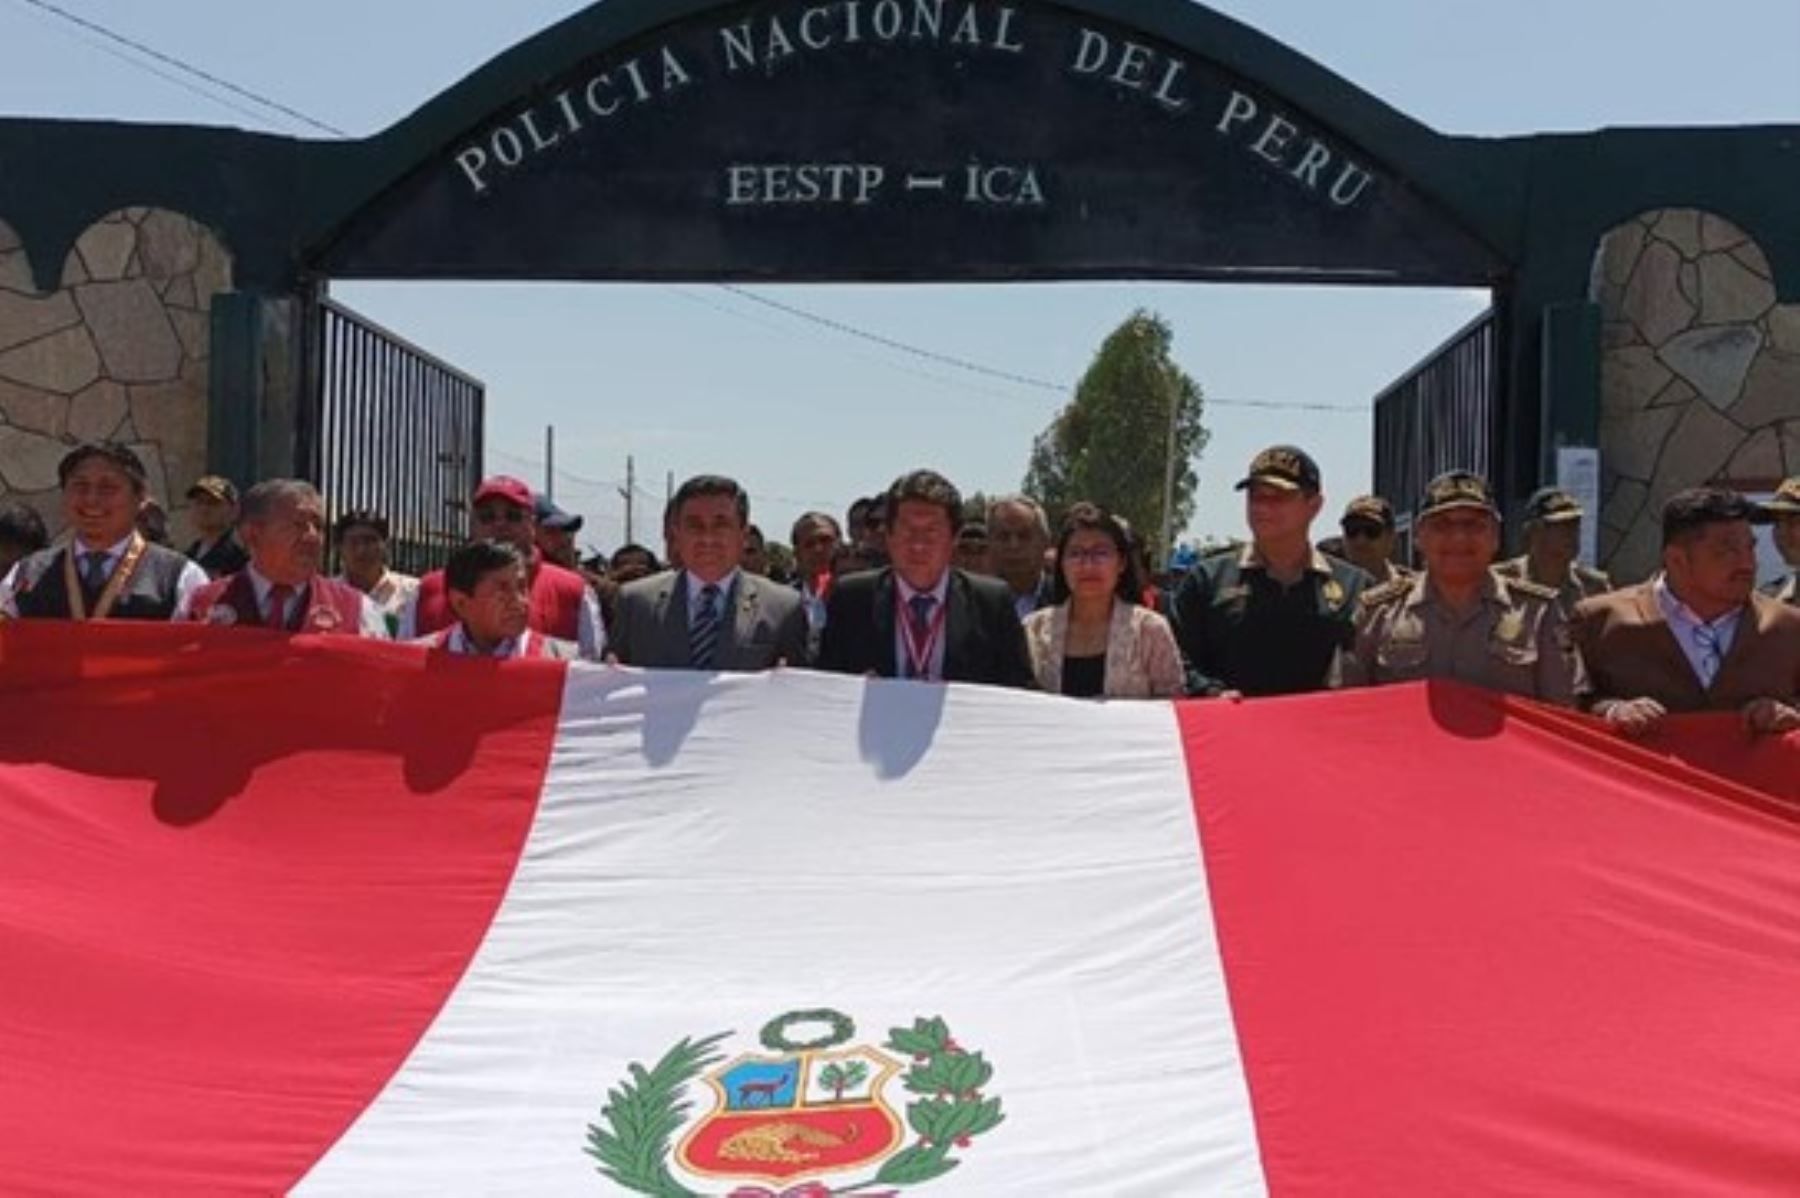 El ministro del Interior, Willy Huerta, participó en el distrito de Santiago (Ica) en el paseo de la Bandera Nacional. Foto: Mininter